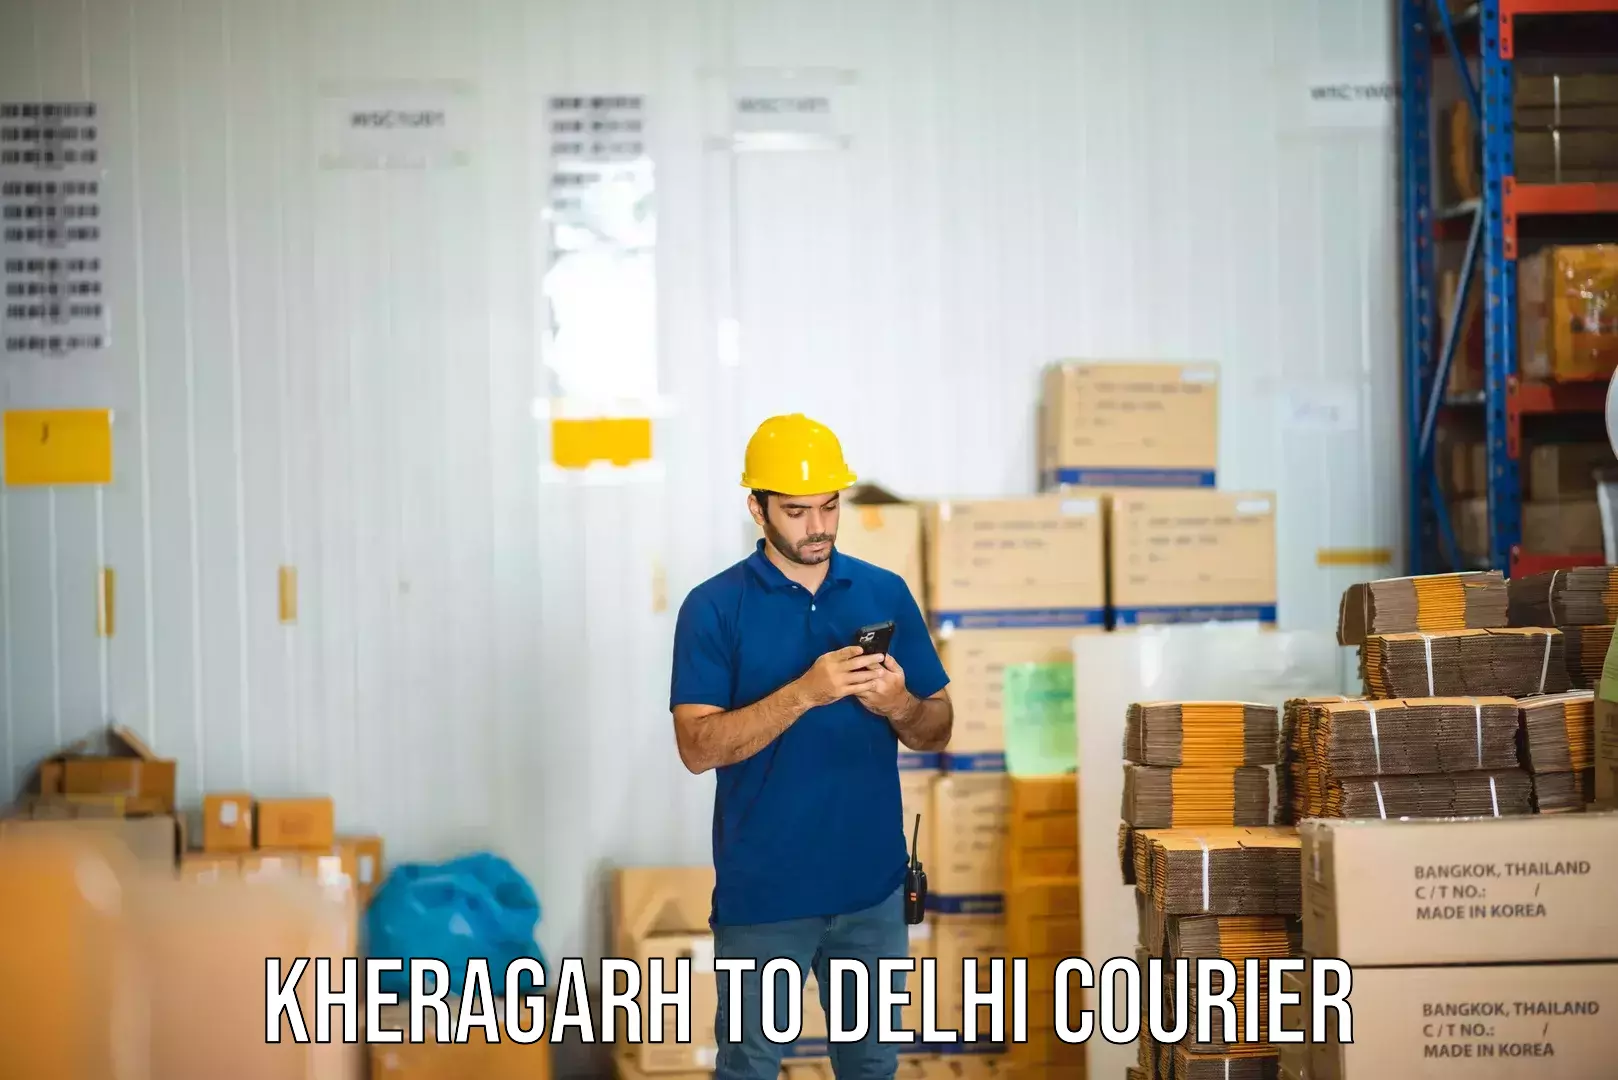 Return courier service Kheragarh to Delhi